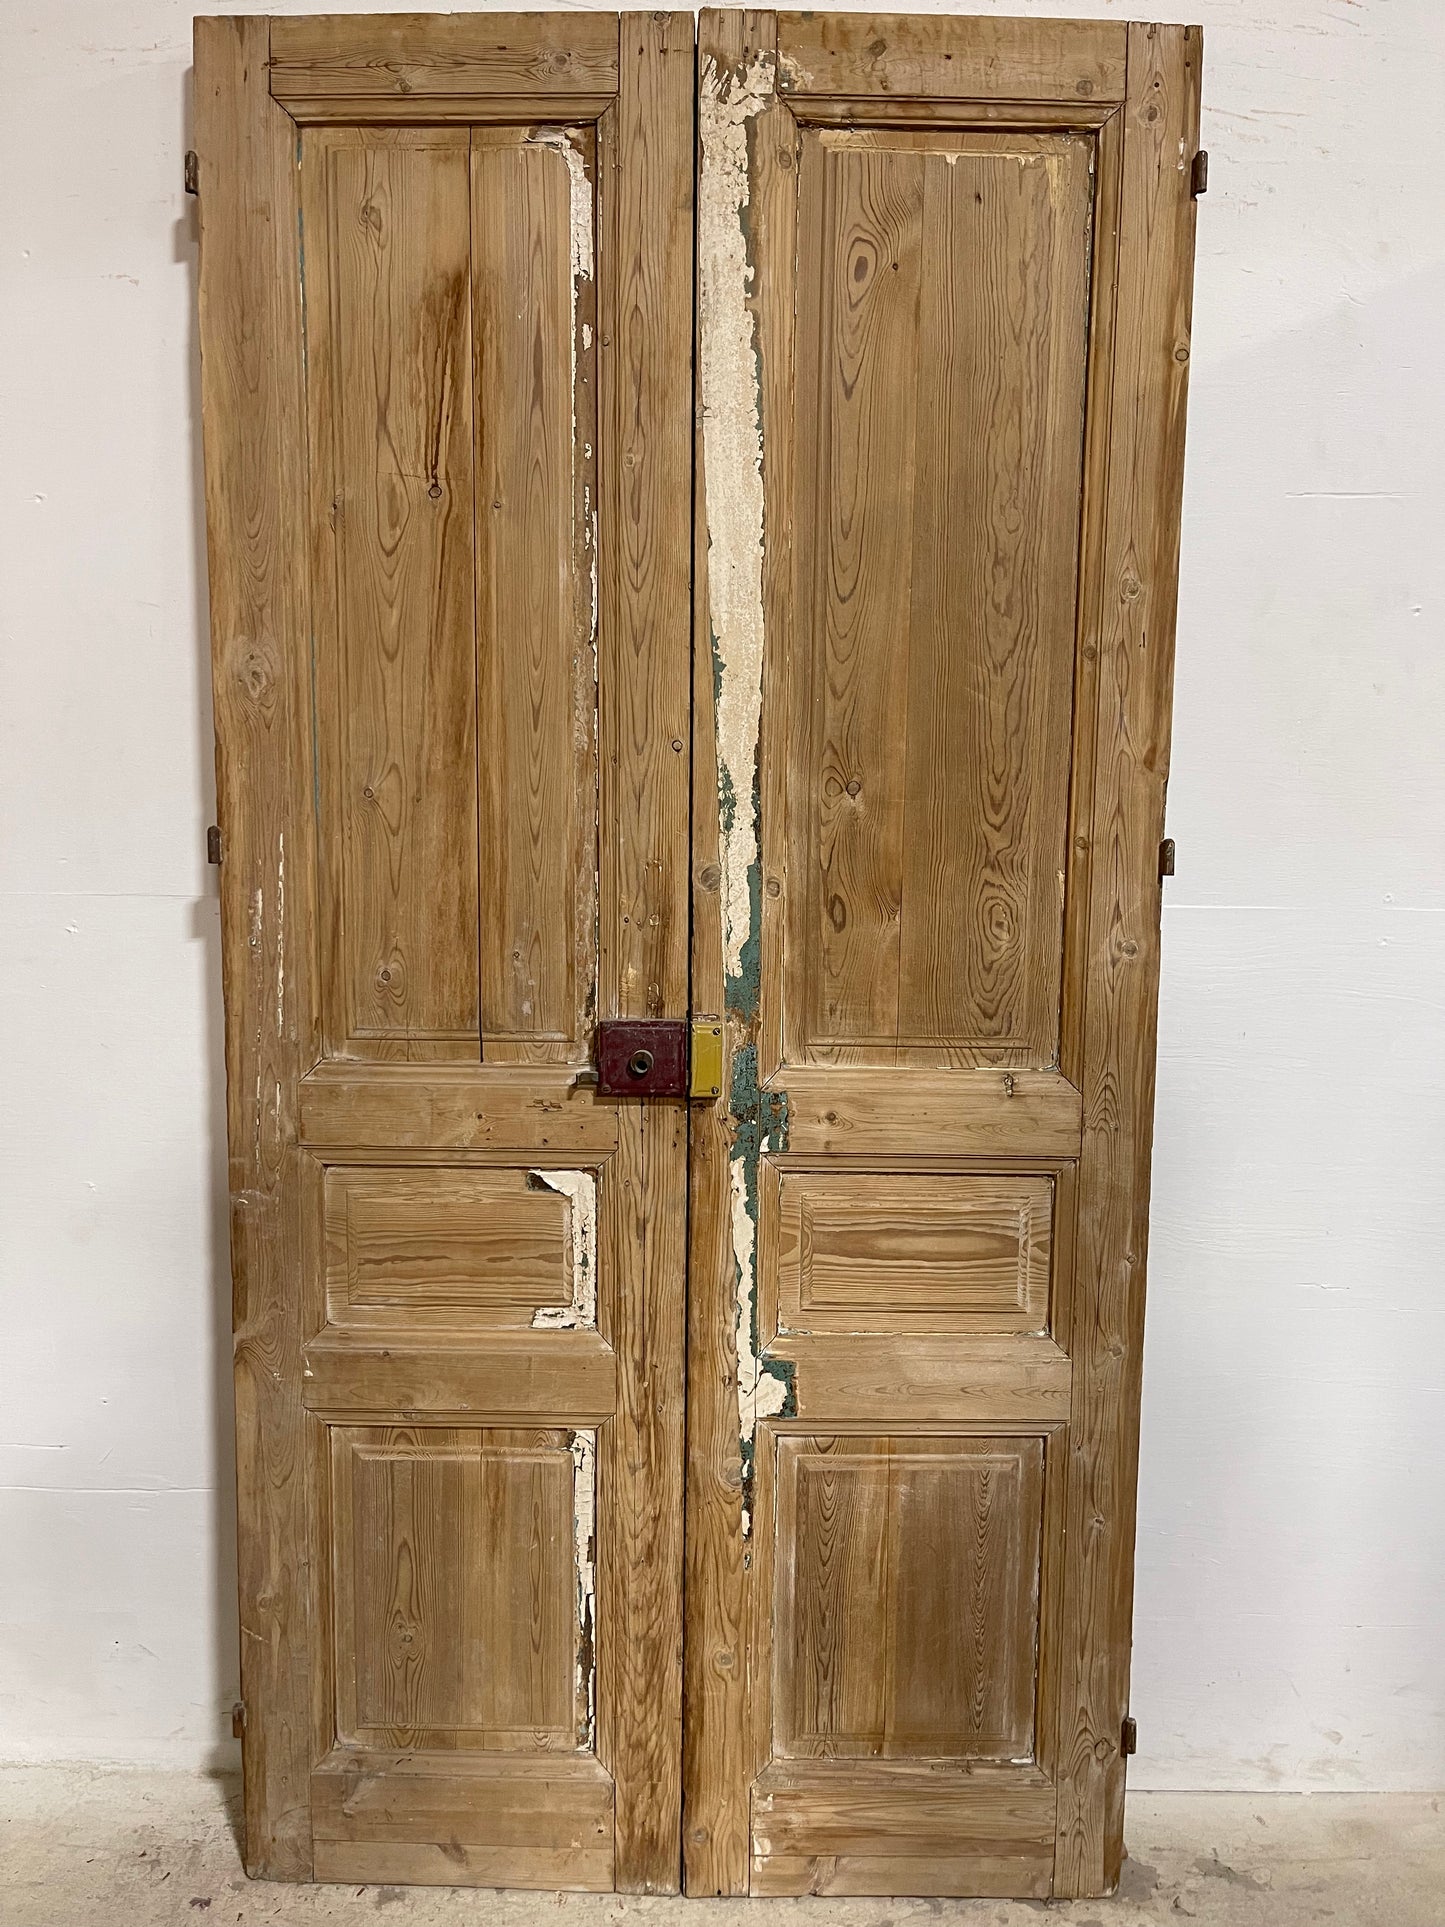 Antique French panel Doors (86x43.5) J648